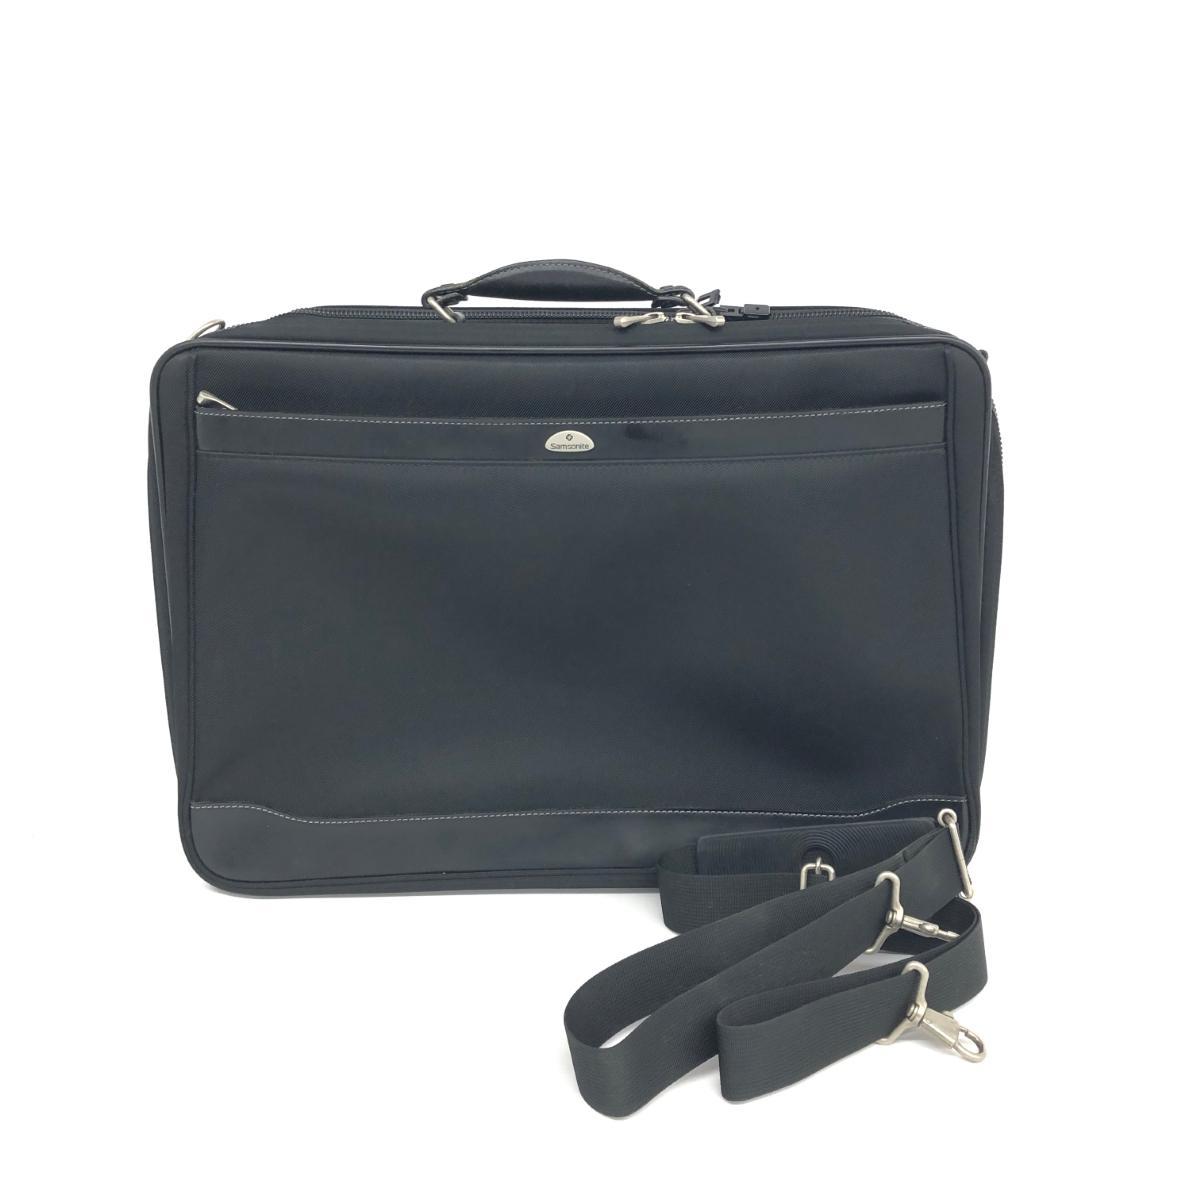 ◆Samsonite サムソナイト ビジネスバッグ◆ ブラック メンズ アッタッシュケース ブリーフケース bag 書類鞄 A4